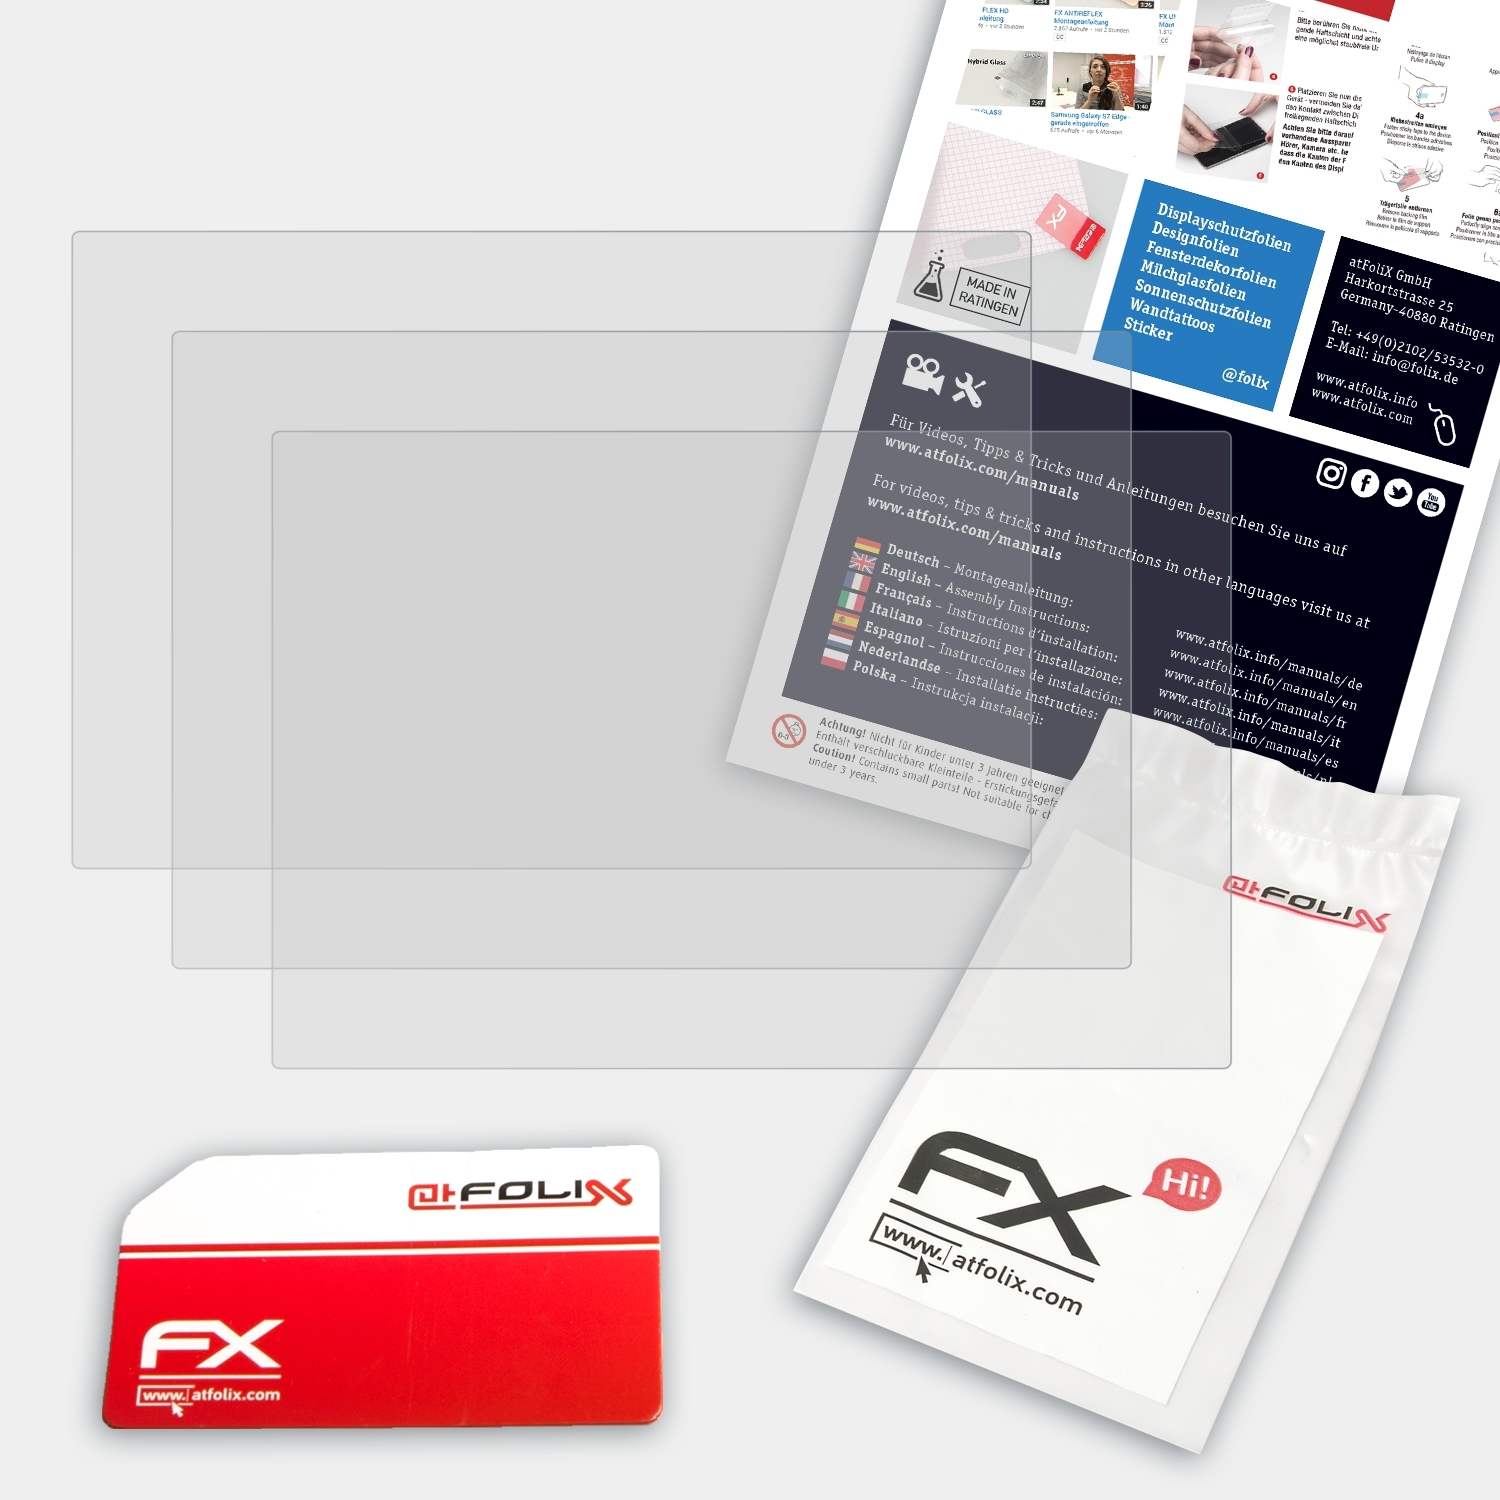 ATFOLIX 3x FX-Antireflex Displayschutz(für Olympus E-P3)